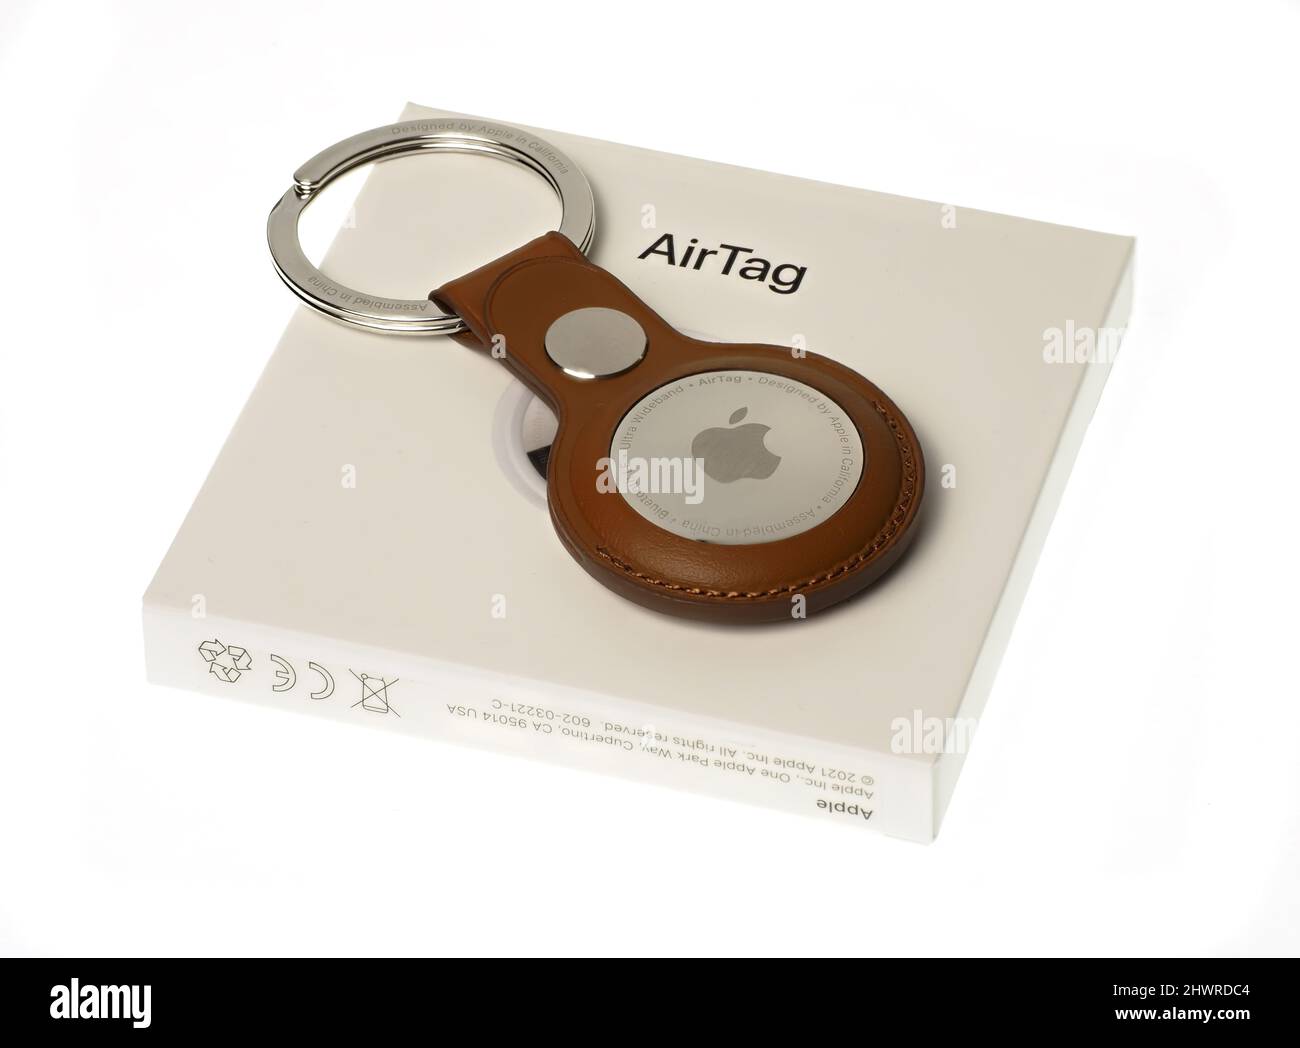 Porte clés airtag Banque de photographies et d'images à haute résolution -  Alamy